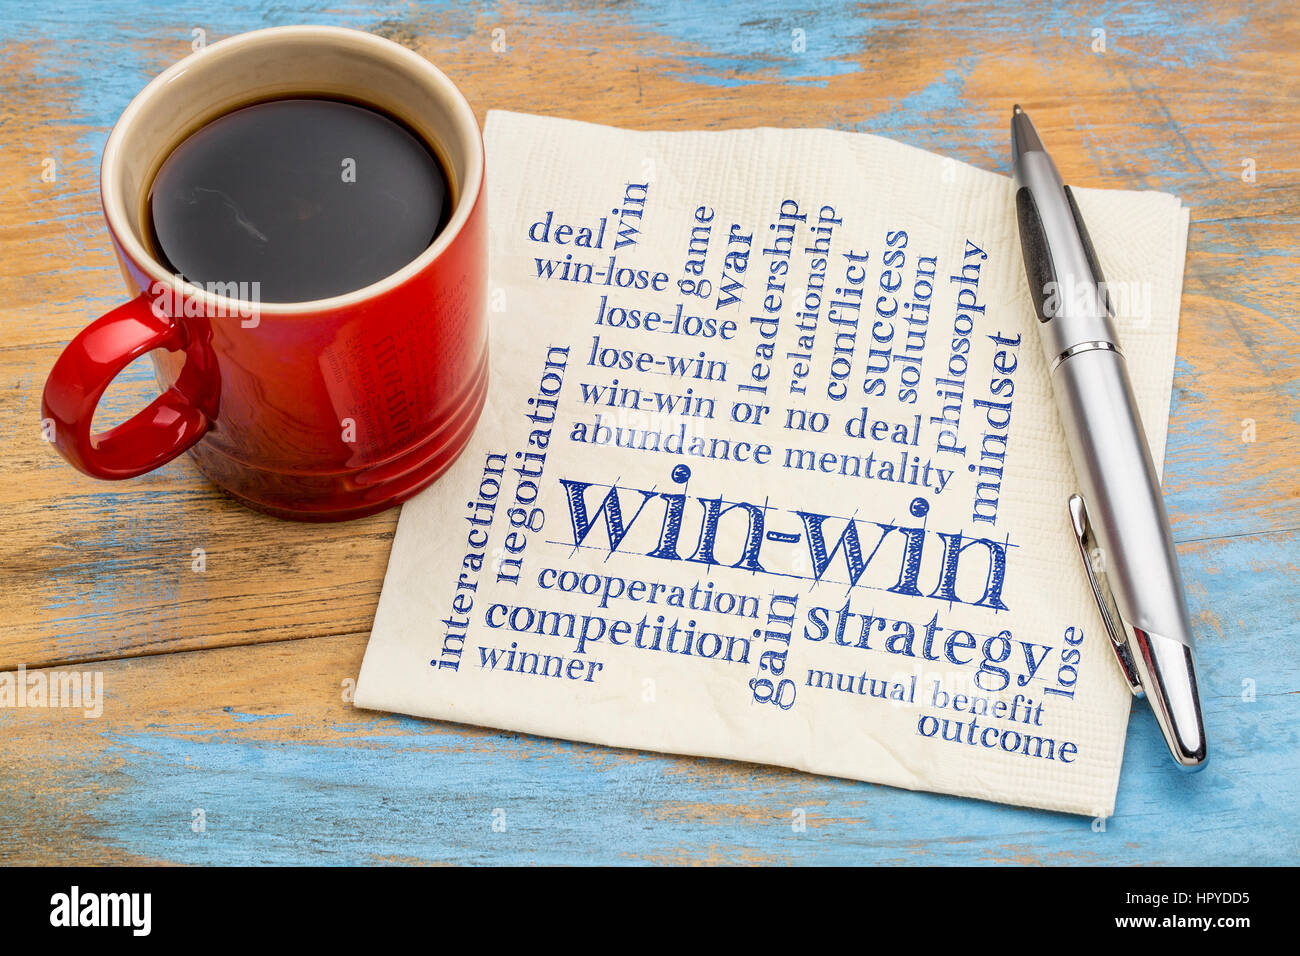 Gewinn-Strategie Wortwolke - Handschrift auf einer Serviette mit einer Tasse Kaffee Stockfoto